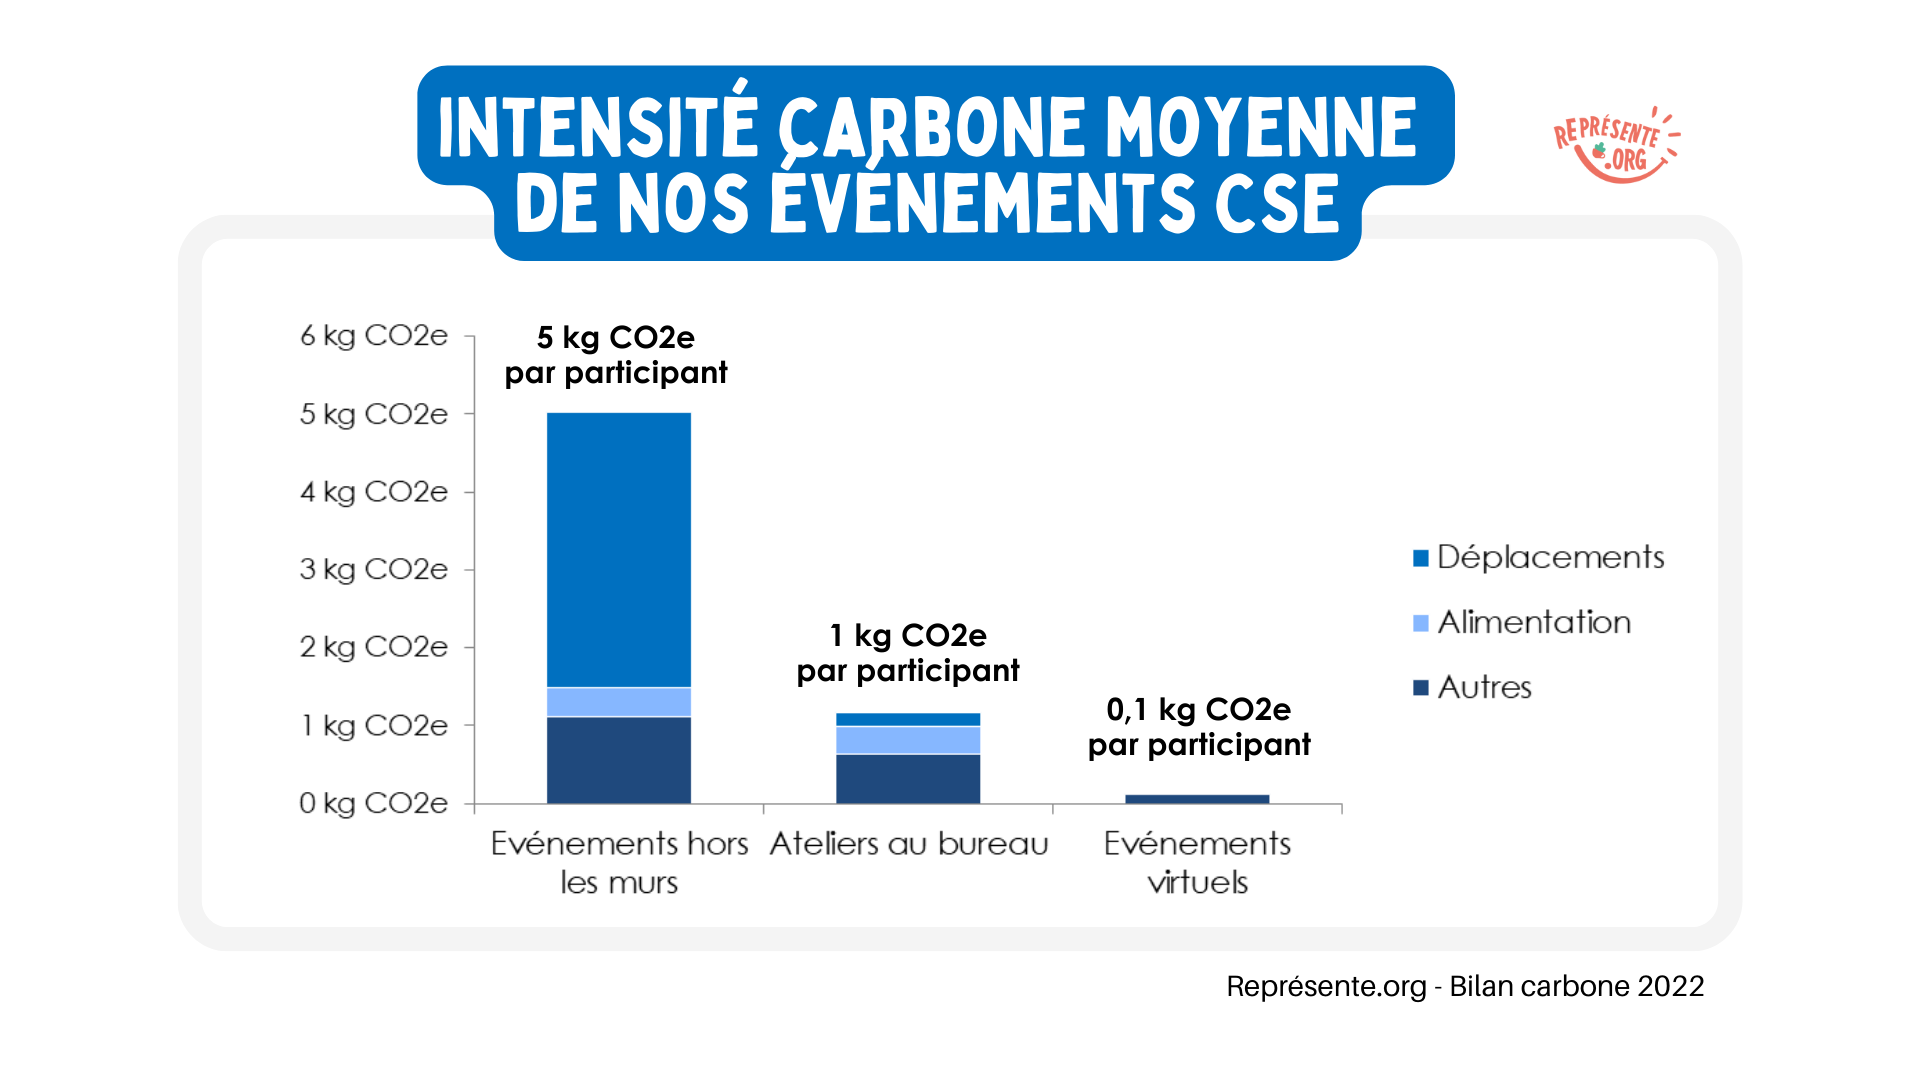 Bilan carbone Représente.org - Les événements